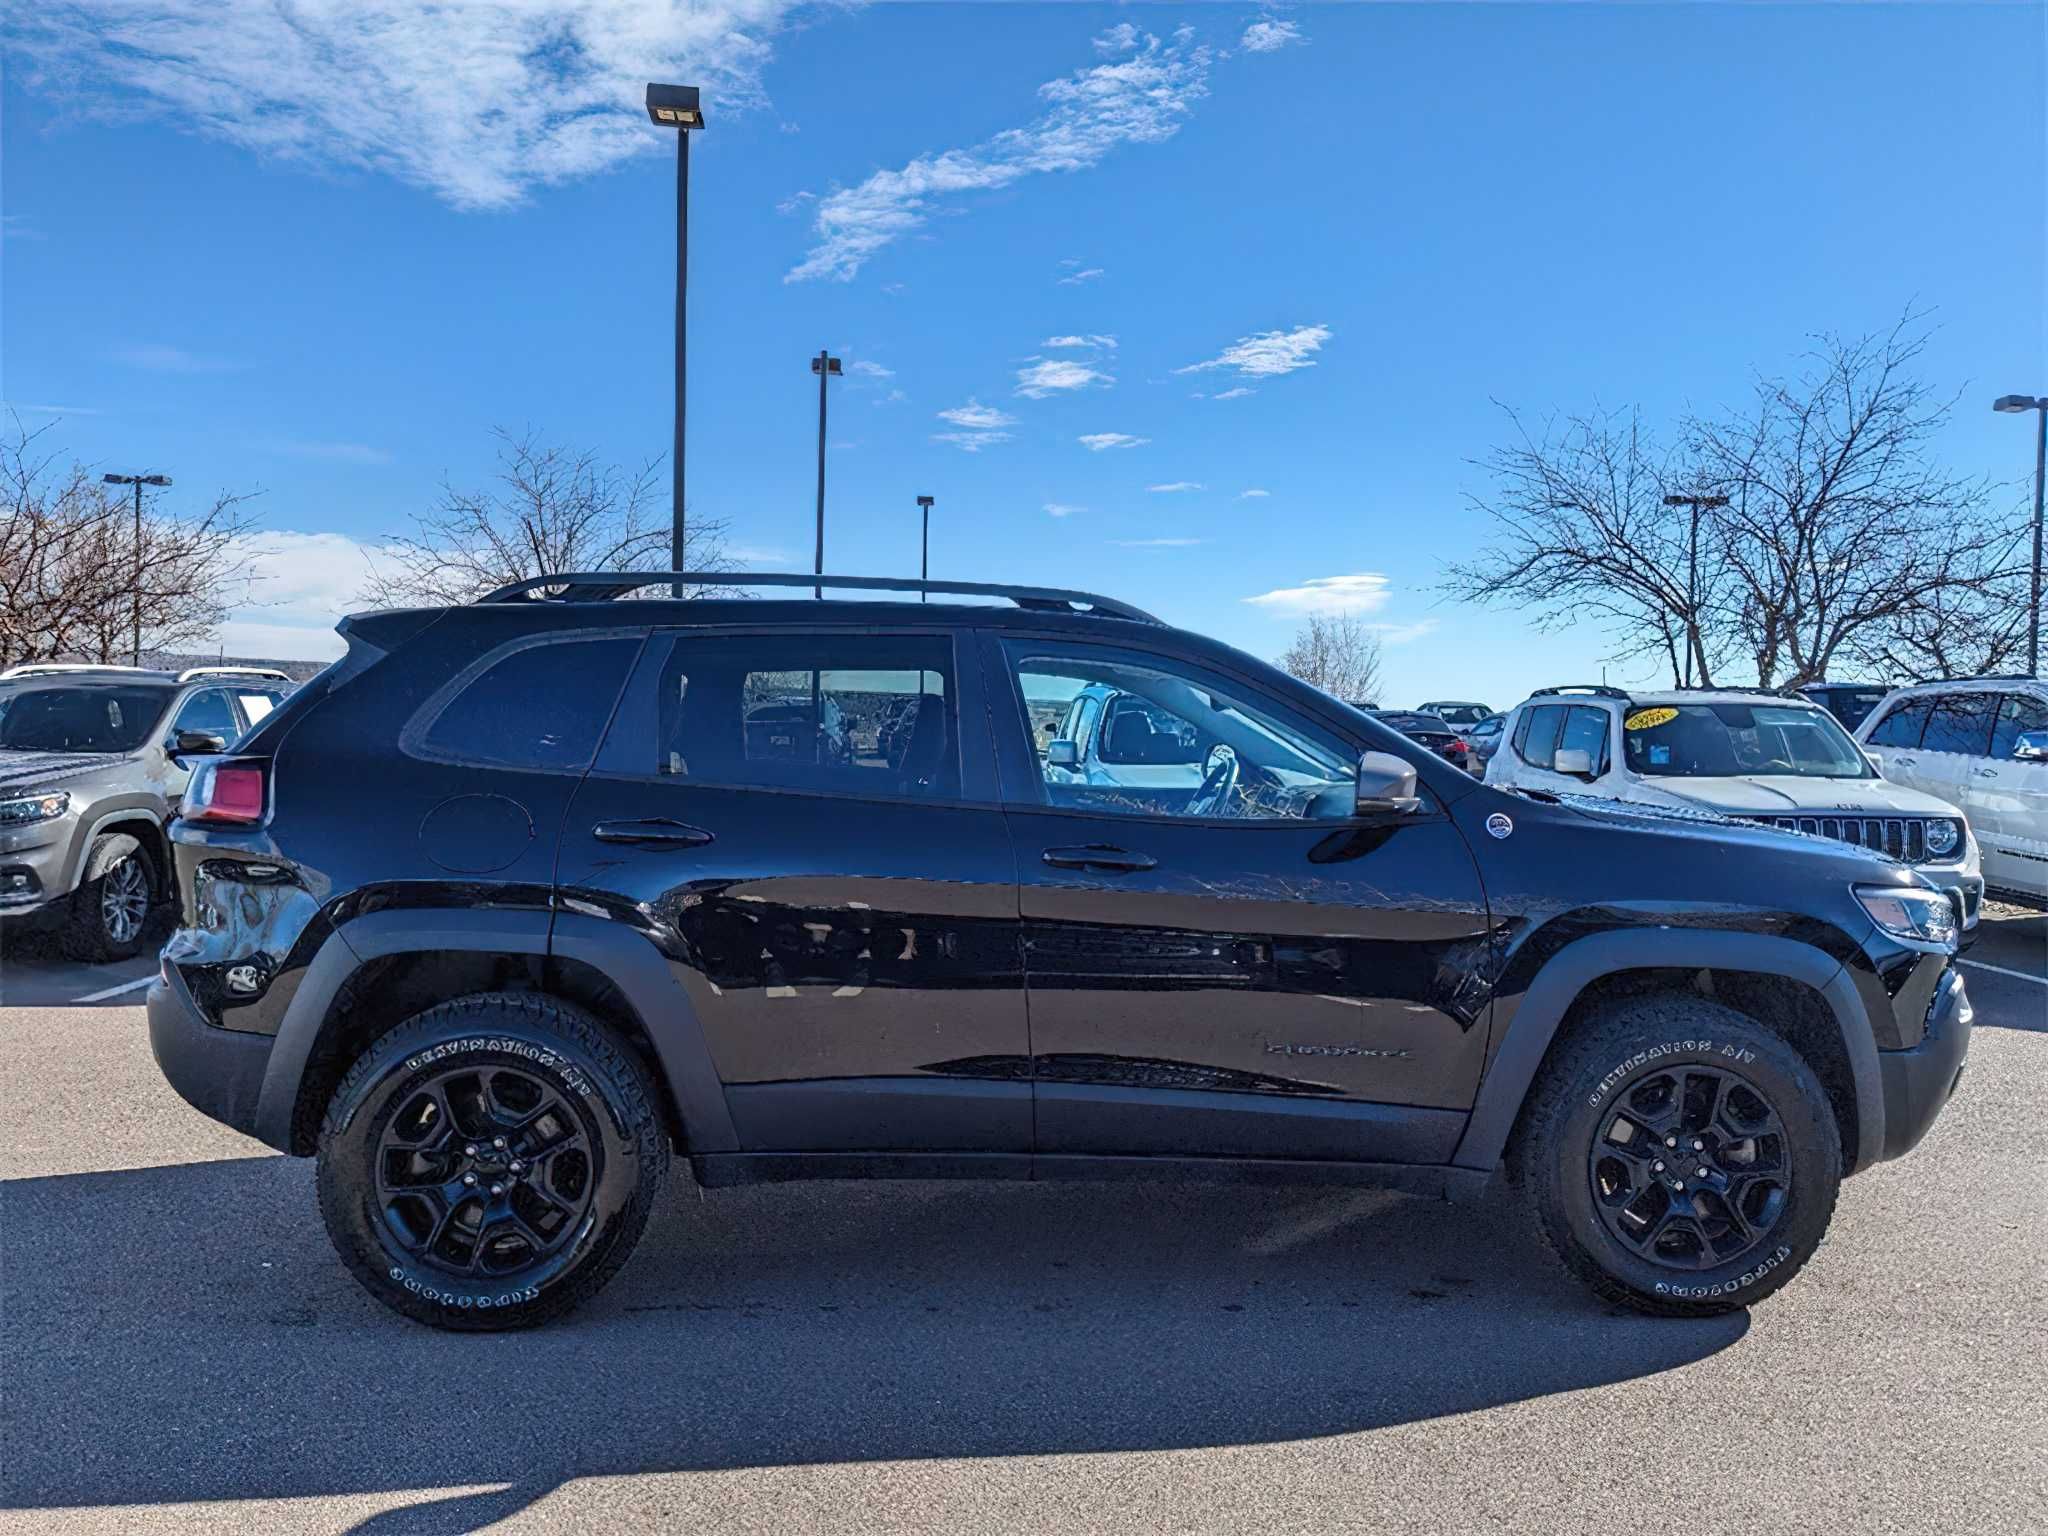 Jeep Cherokee 2021